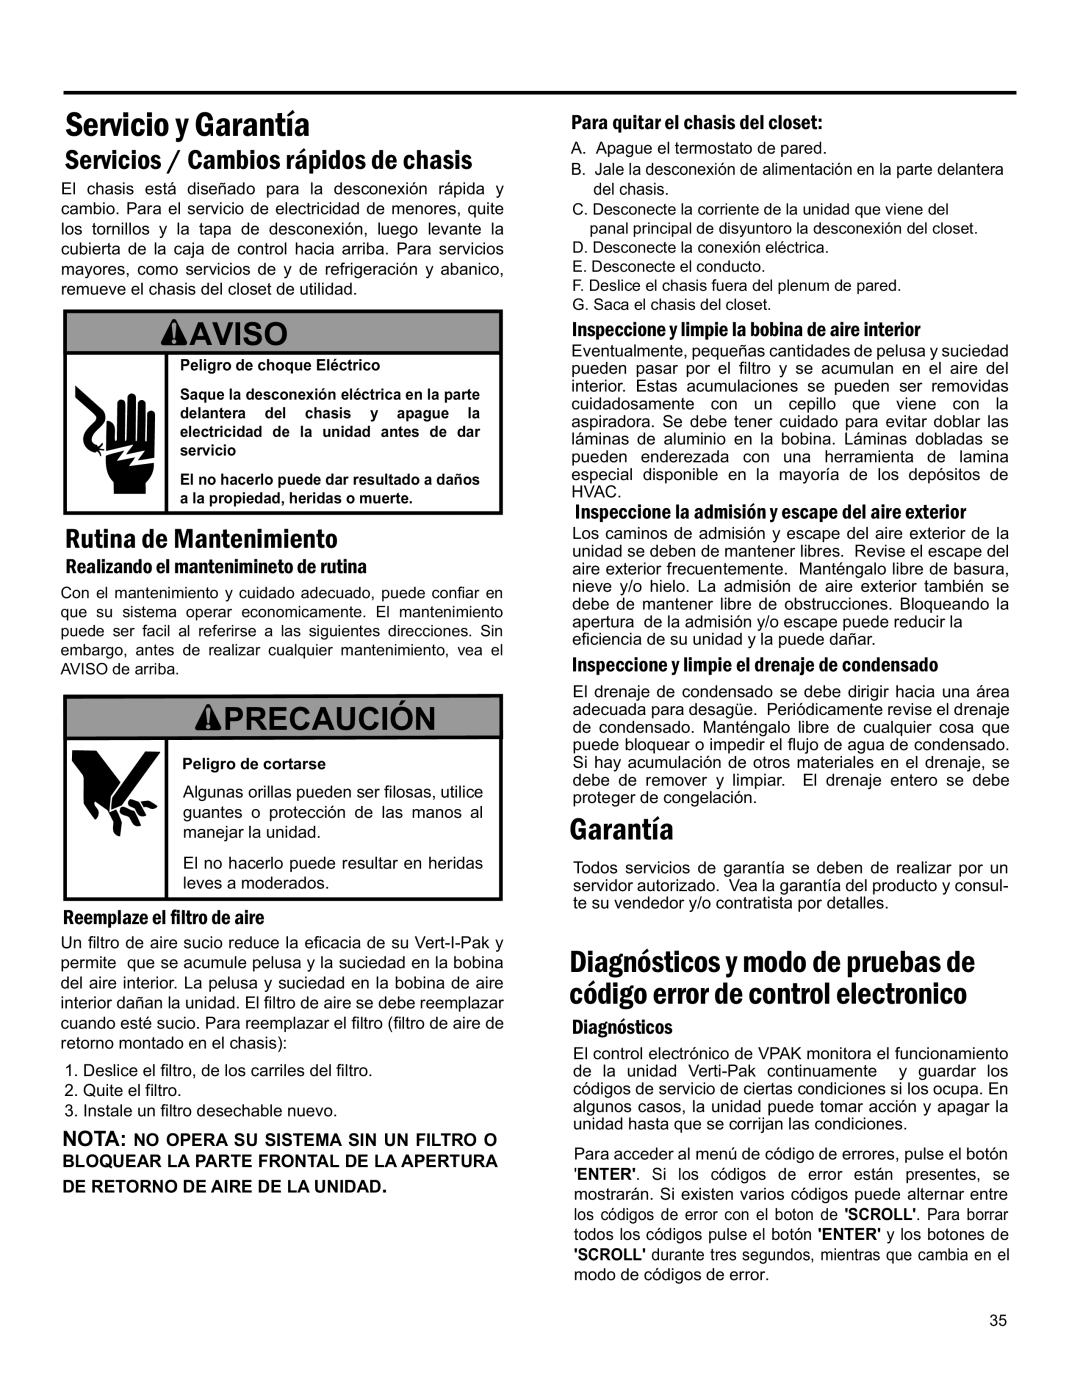 Friedrich 920-075-13 (1-11) Precaución, Servicio Y Garantía, Aviso, Servicios / Cambios Rápidos De Chasis, Quite El Filtro 